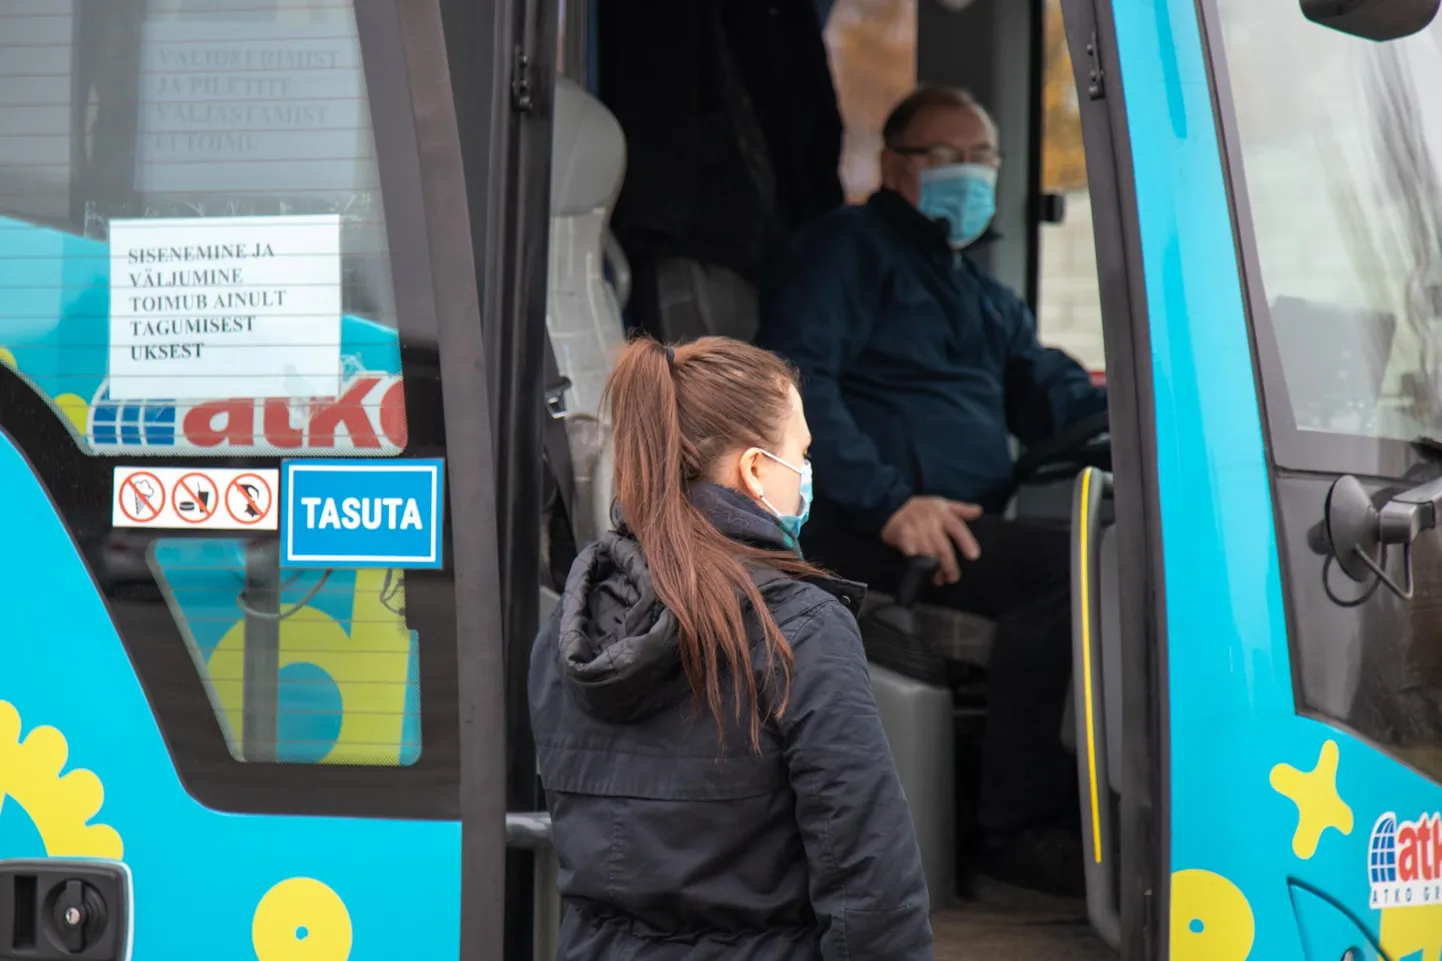 Bussi minnes soovitatakse kanda maski.